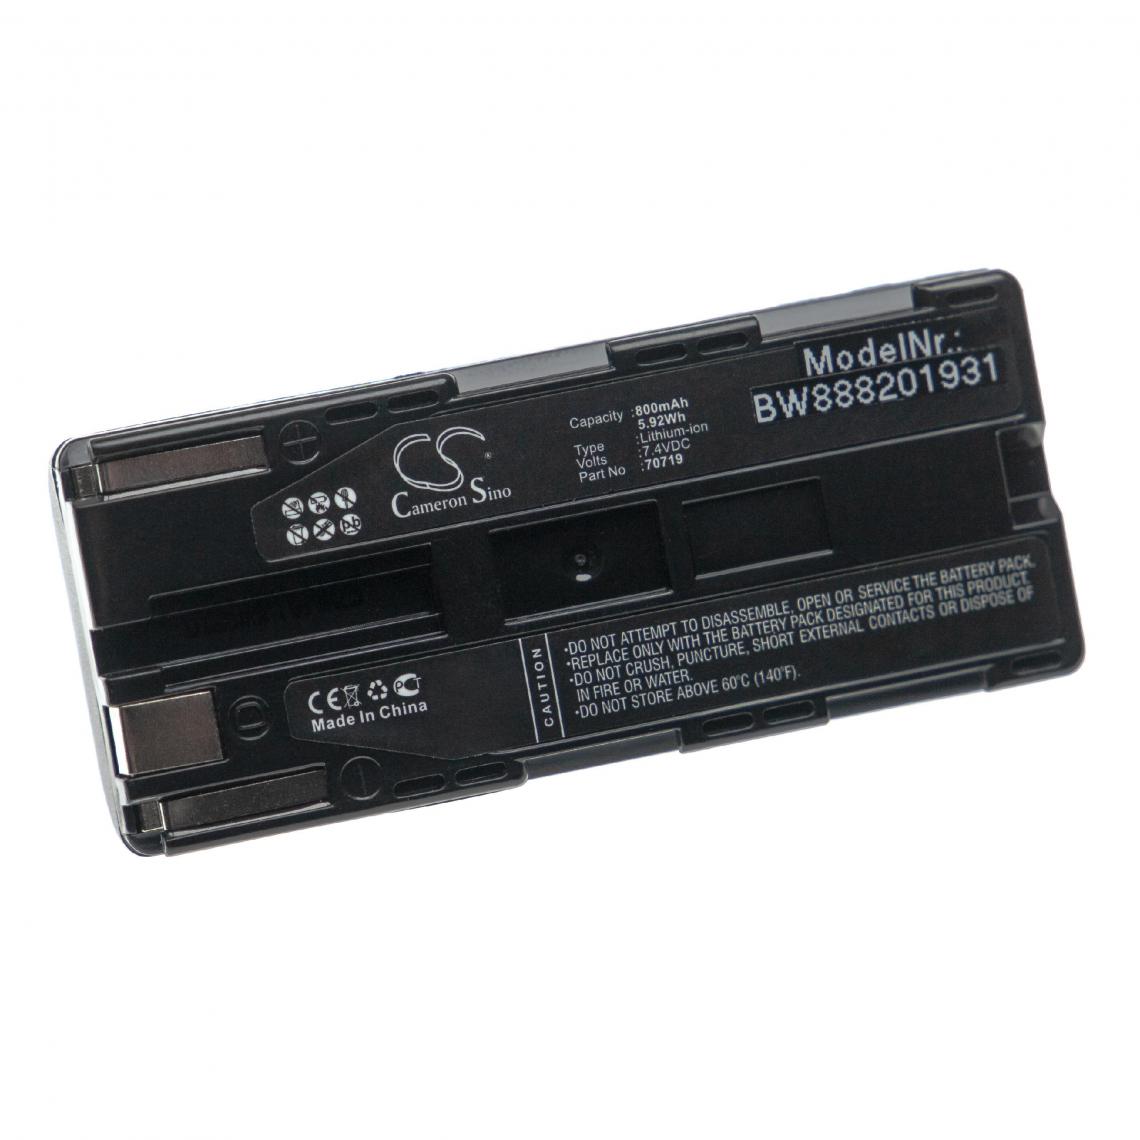 Vhbw - vhbw Batterie remplacement pour AEG 70178 pour lecteur de puce ou transpondeur (800mAh, 7,4V, Li-ion) - Autre appareil de mesure